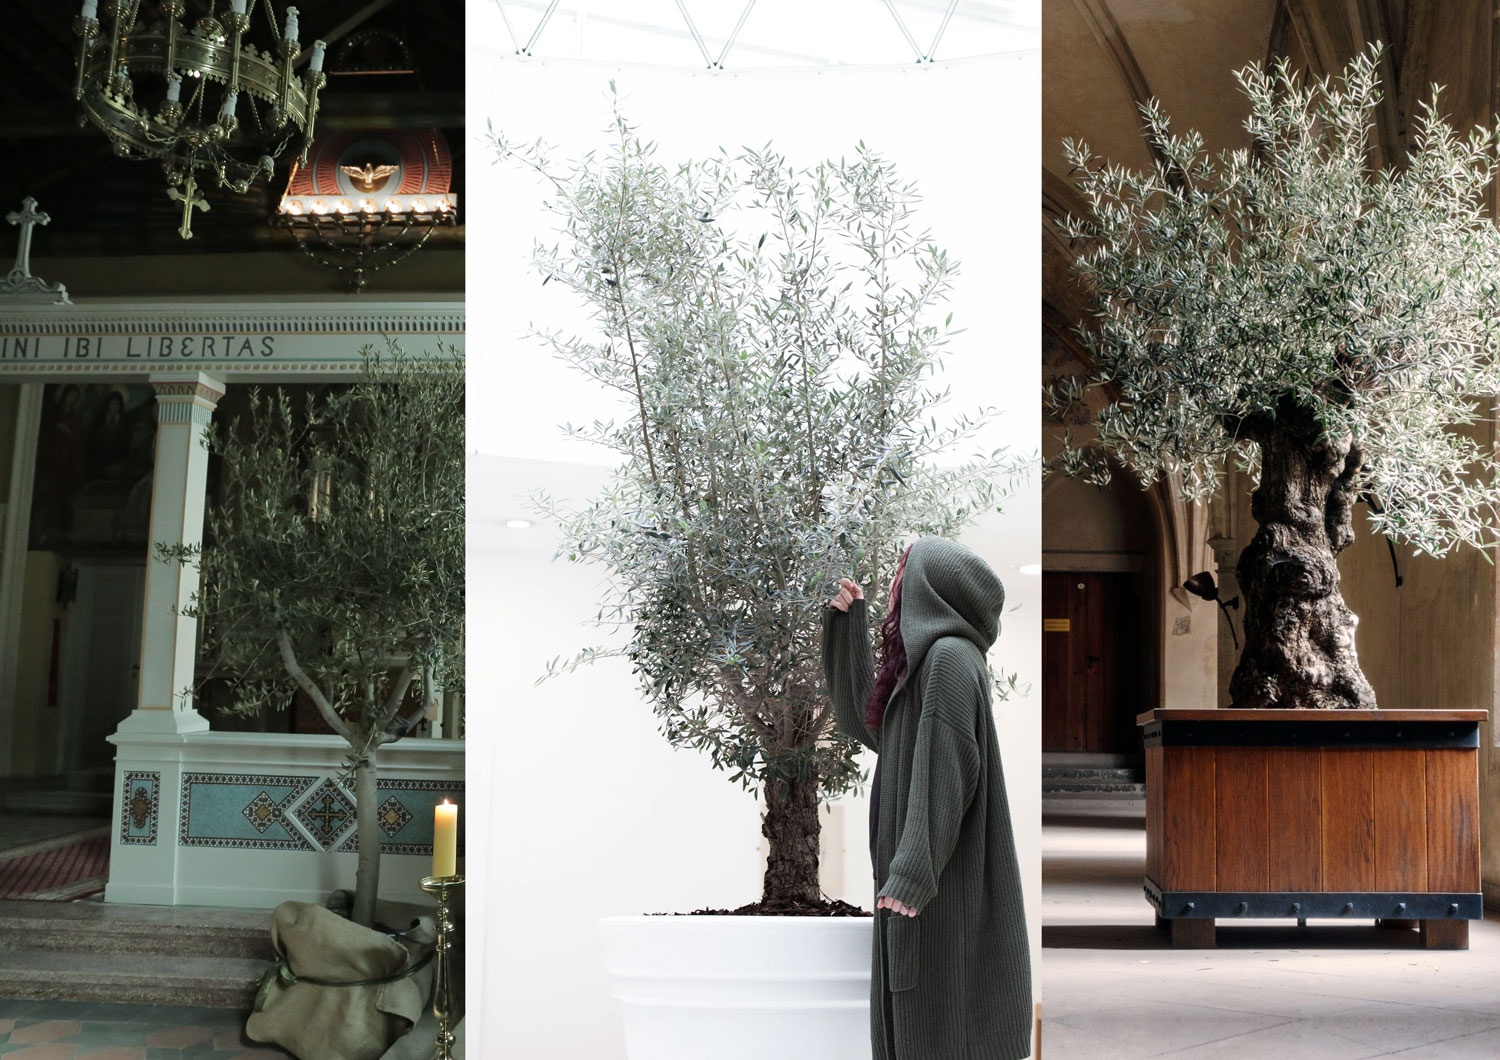 Kwiaty do Grobu Bożego to nie teologiczna prawda, ale propozycja. DAYENU design proponuje coś innego: drzewka oliwne! Piękne, zielone i jakże symboliczne!